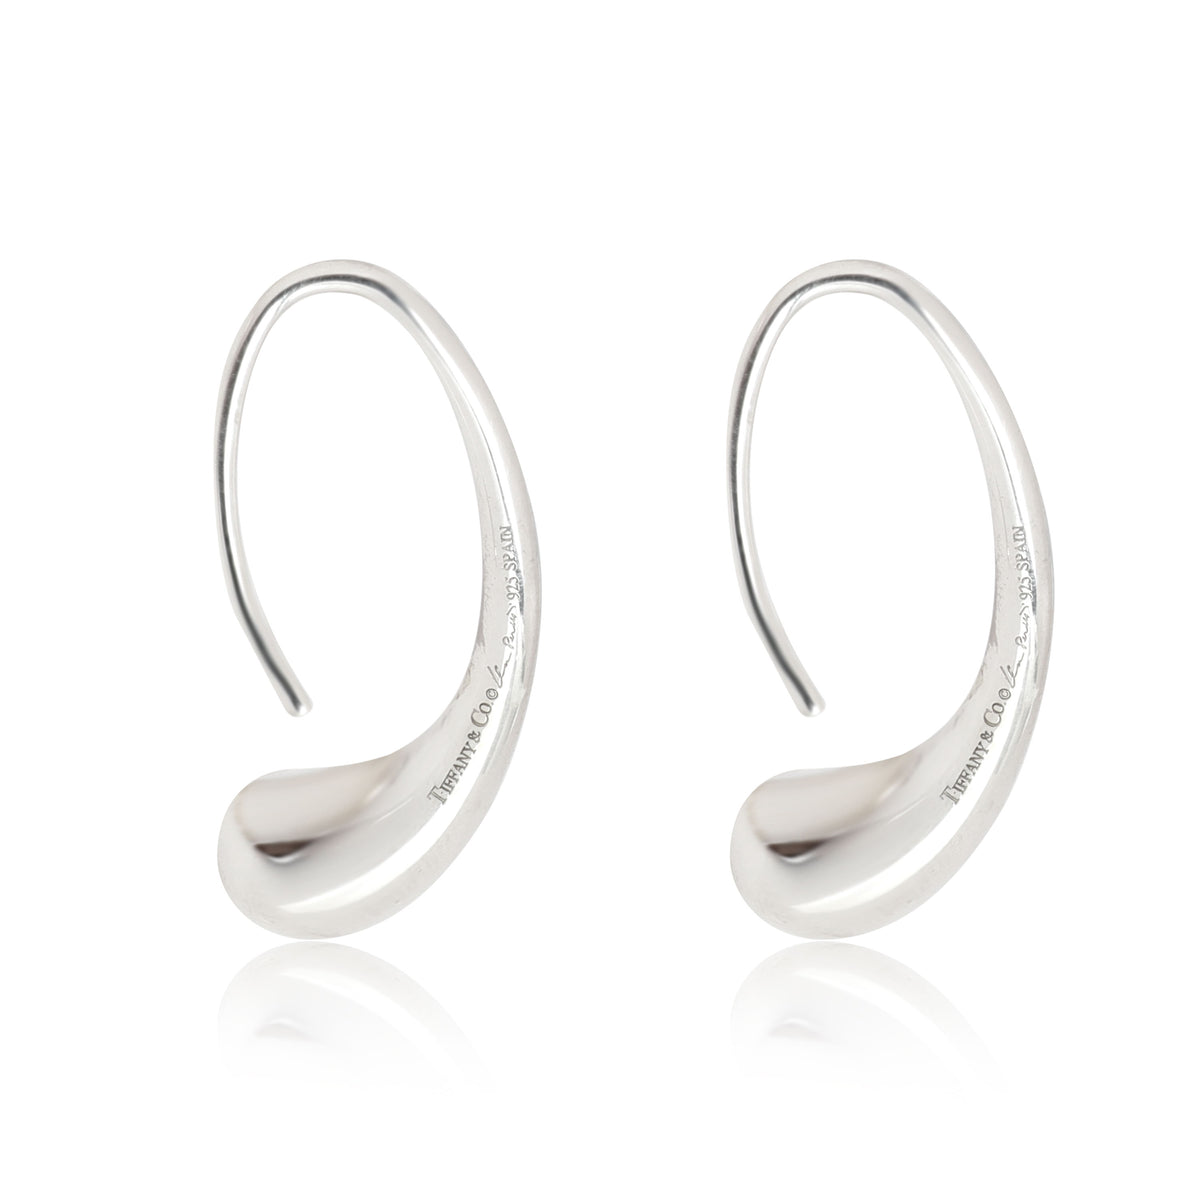 Tiffany & Co. Elsa Peretti Eelongated Teardrop Earrings in Sterling Silver